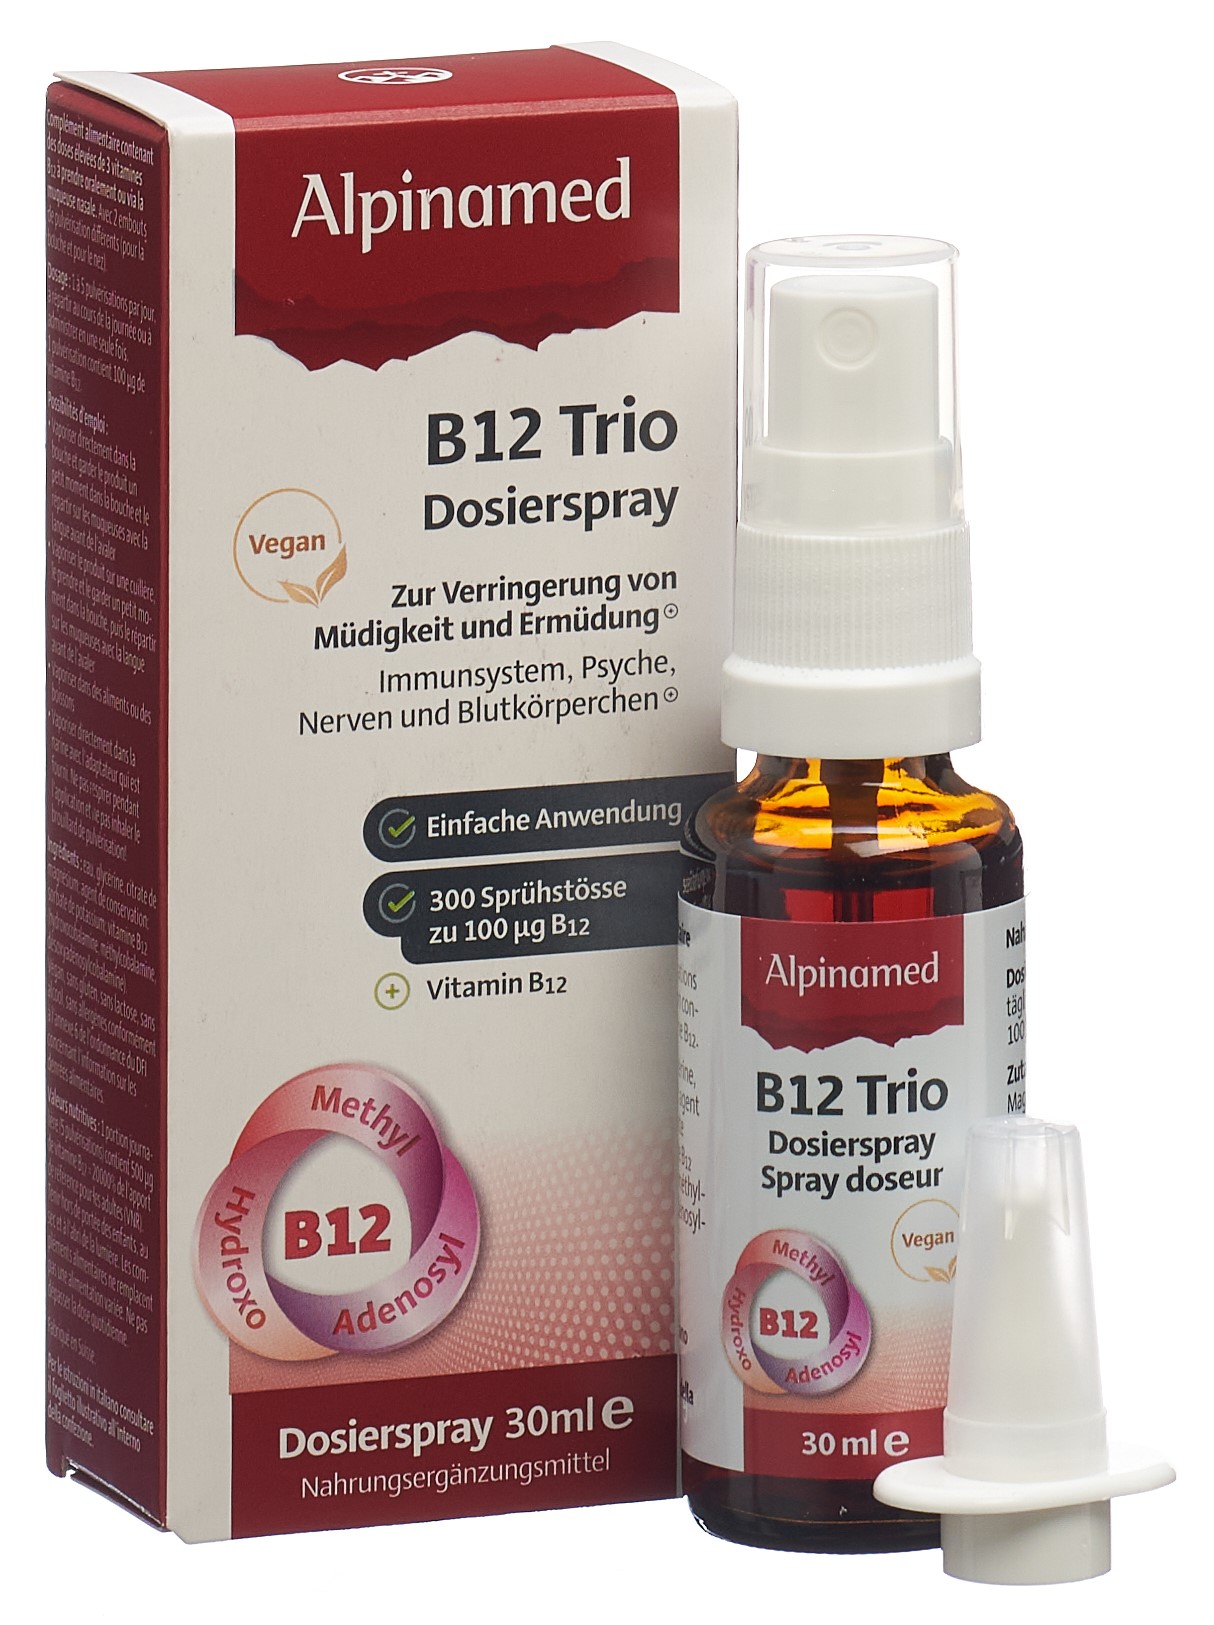 ALPINAMED B12 Trio Dosierspray Fl 30 ml